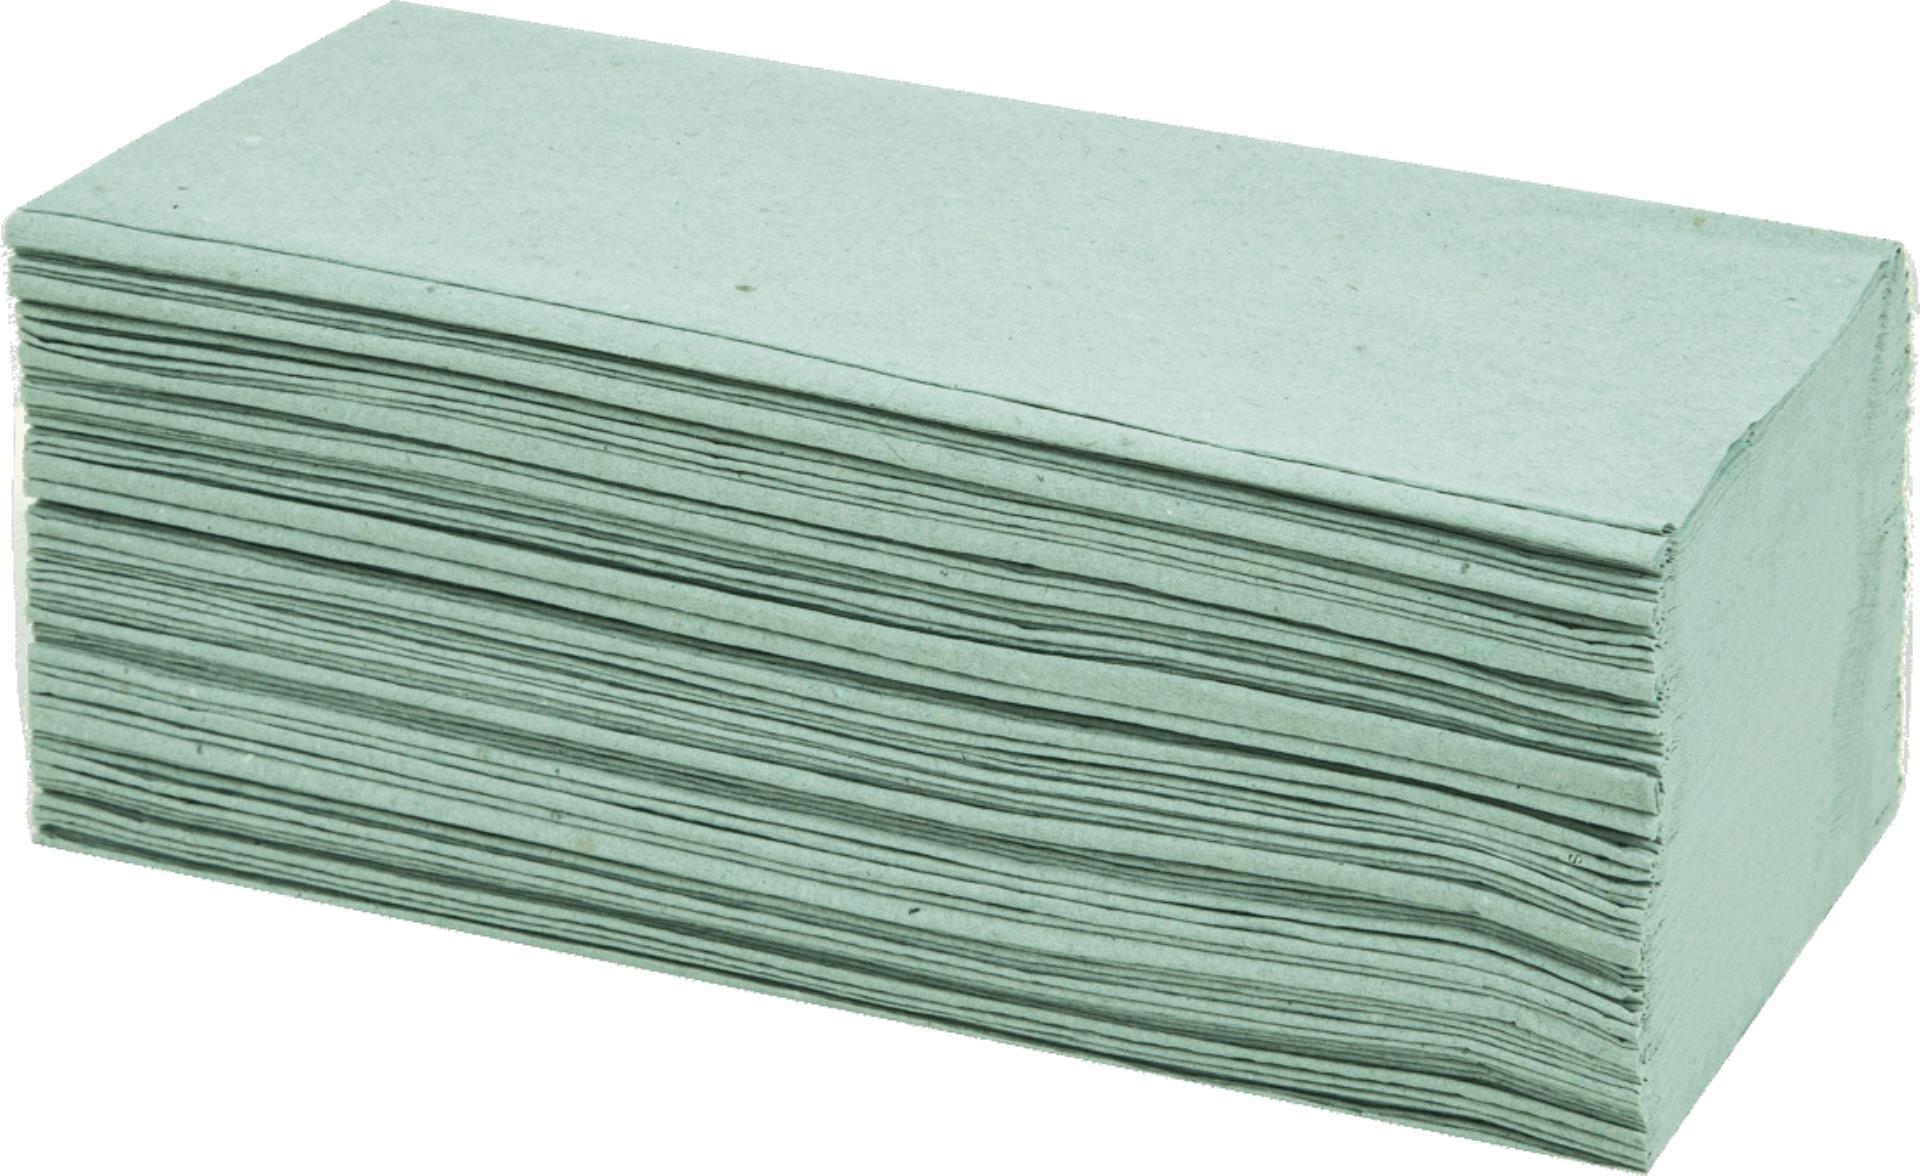 Papírové ručníky - jednovrstvé, zelené, 250 ks